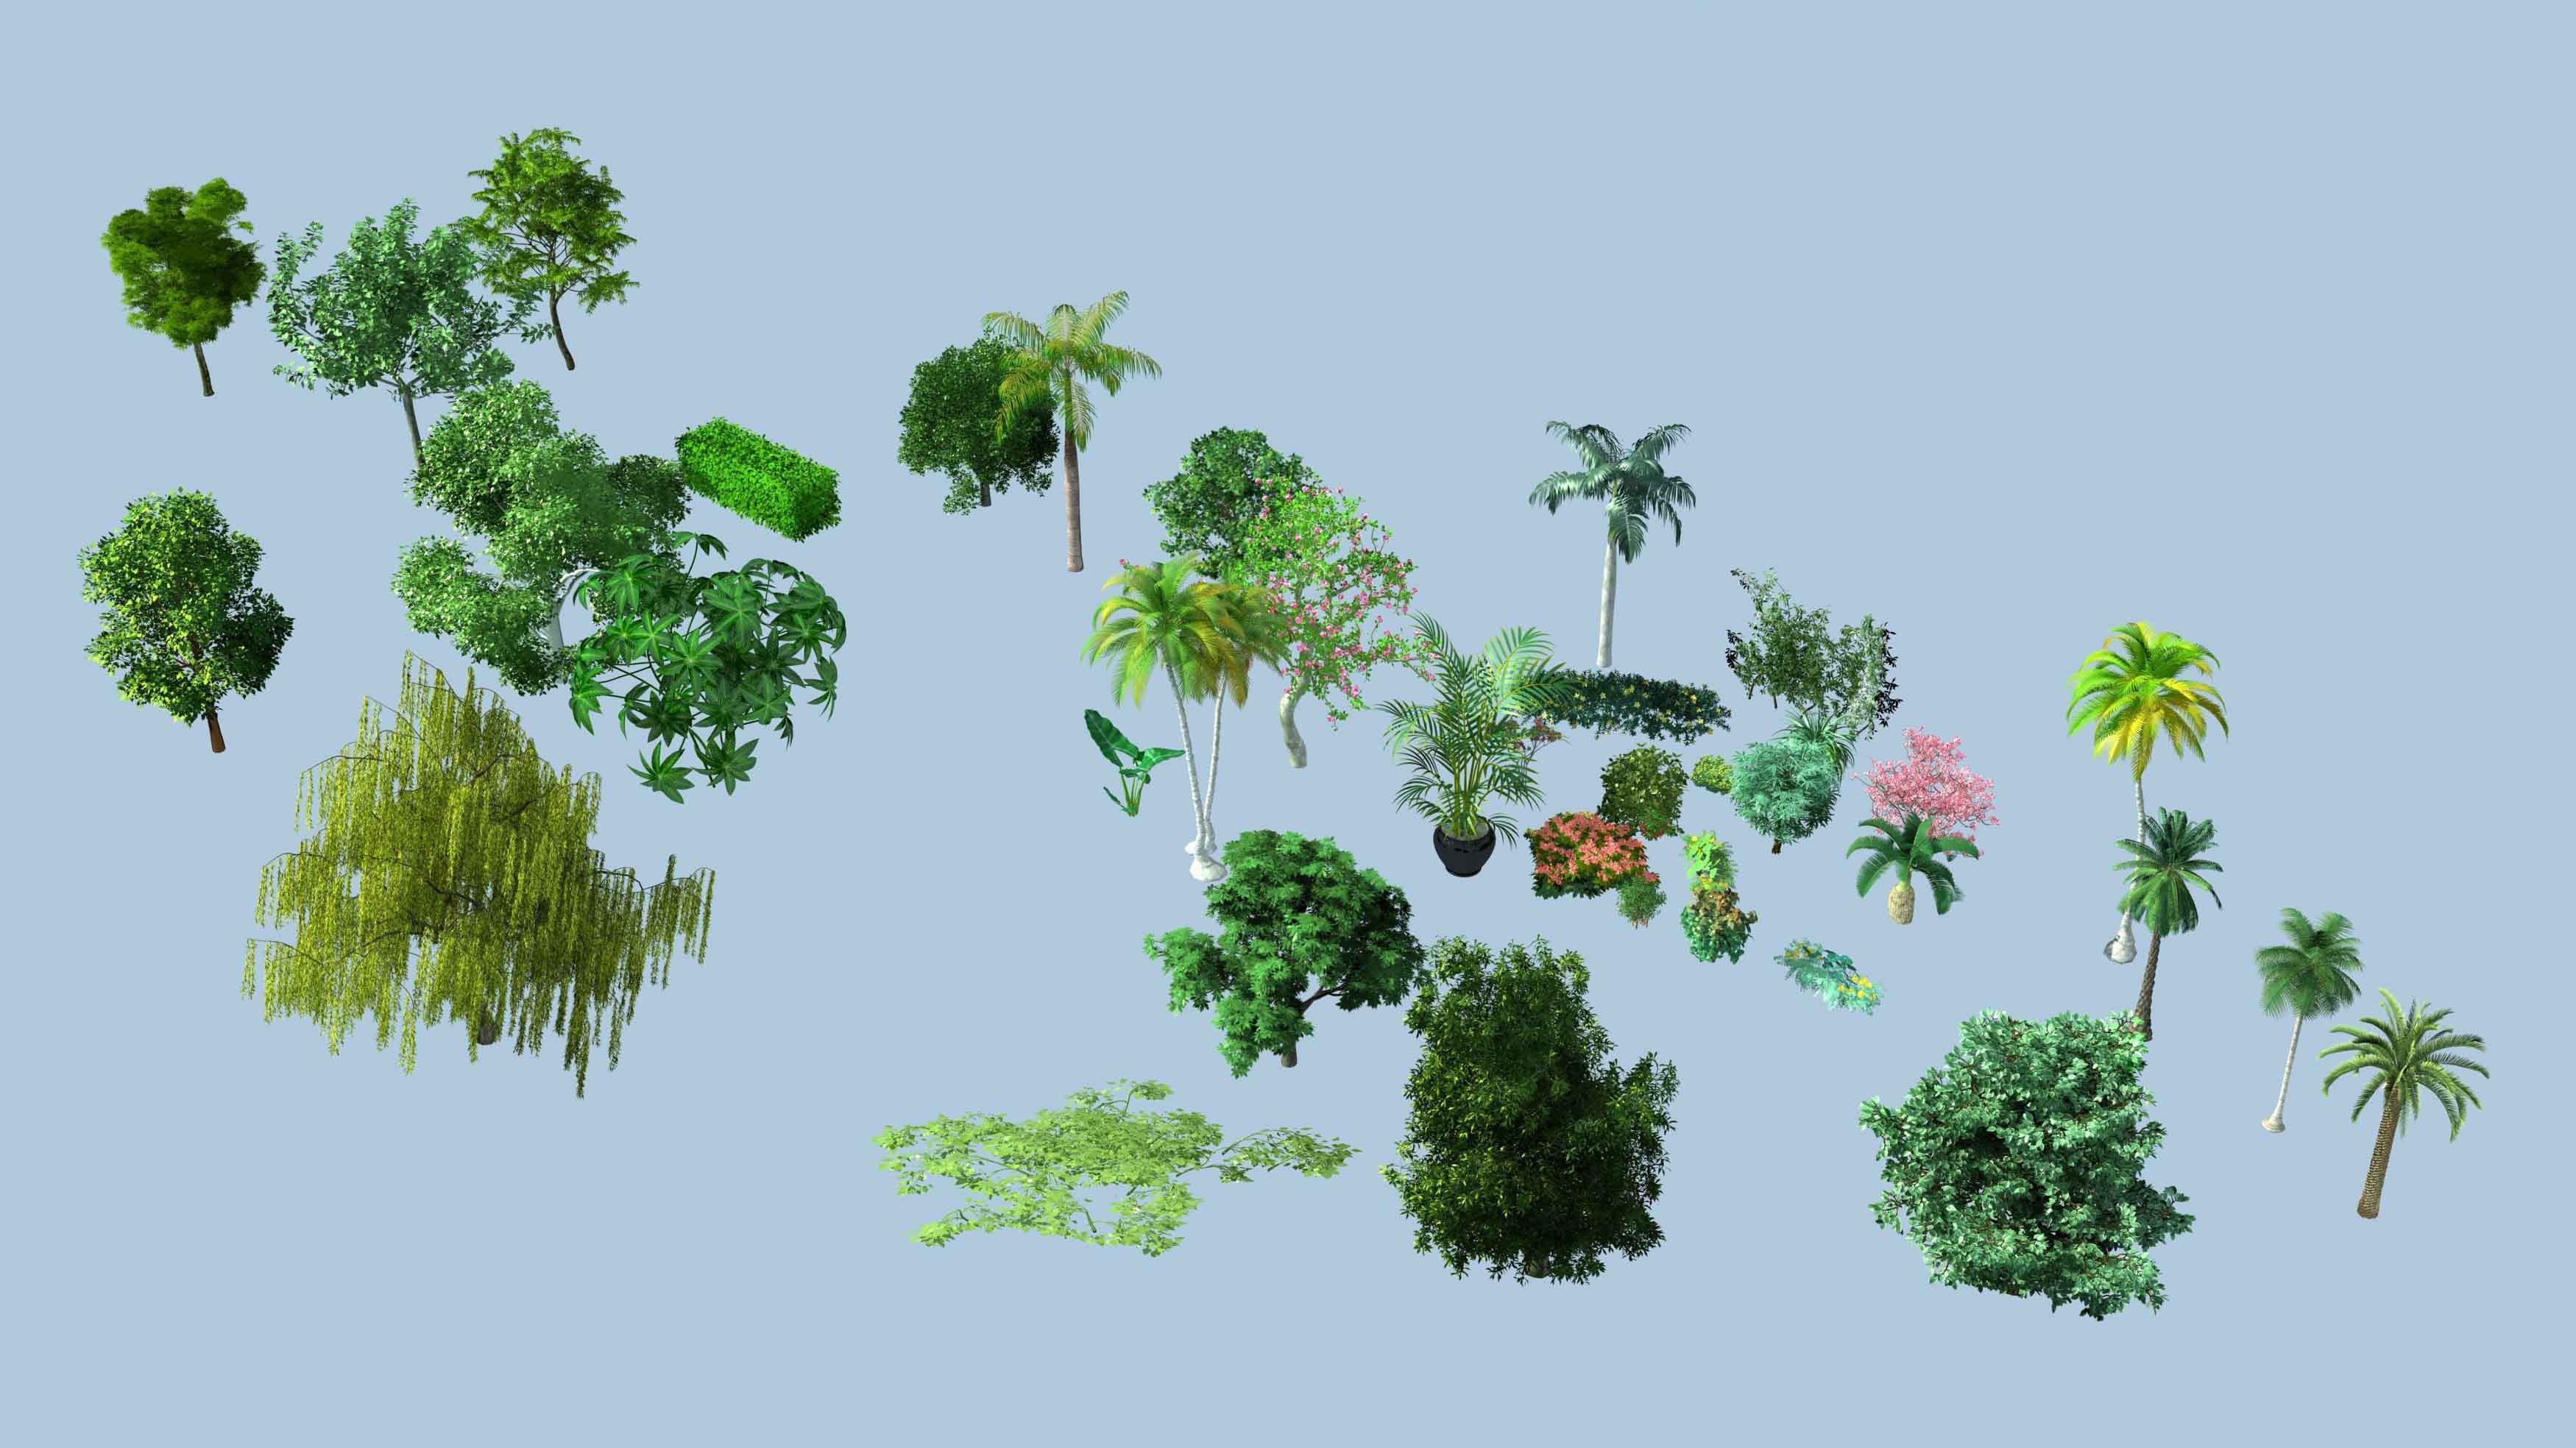 树木代理植物9/景观植物3d代理模型/不是实物/网传